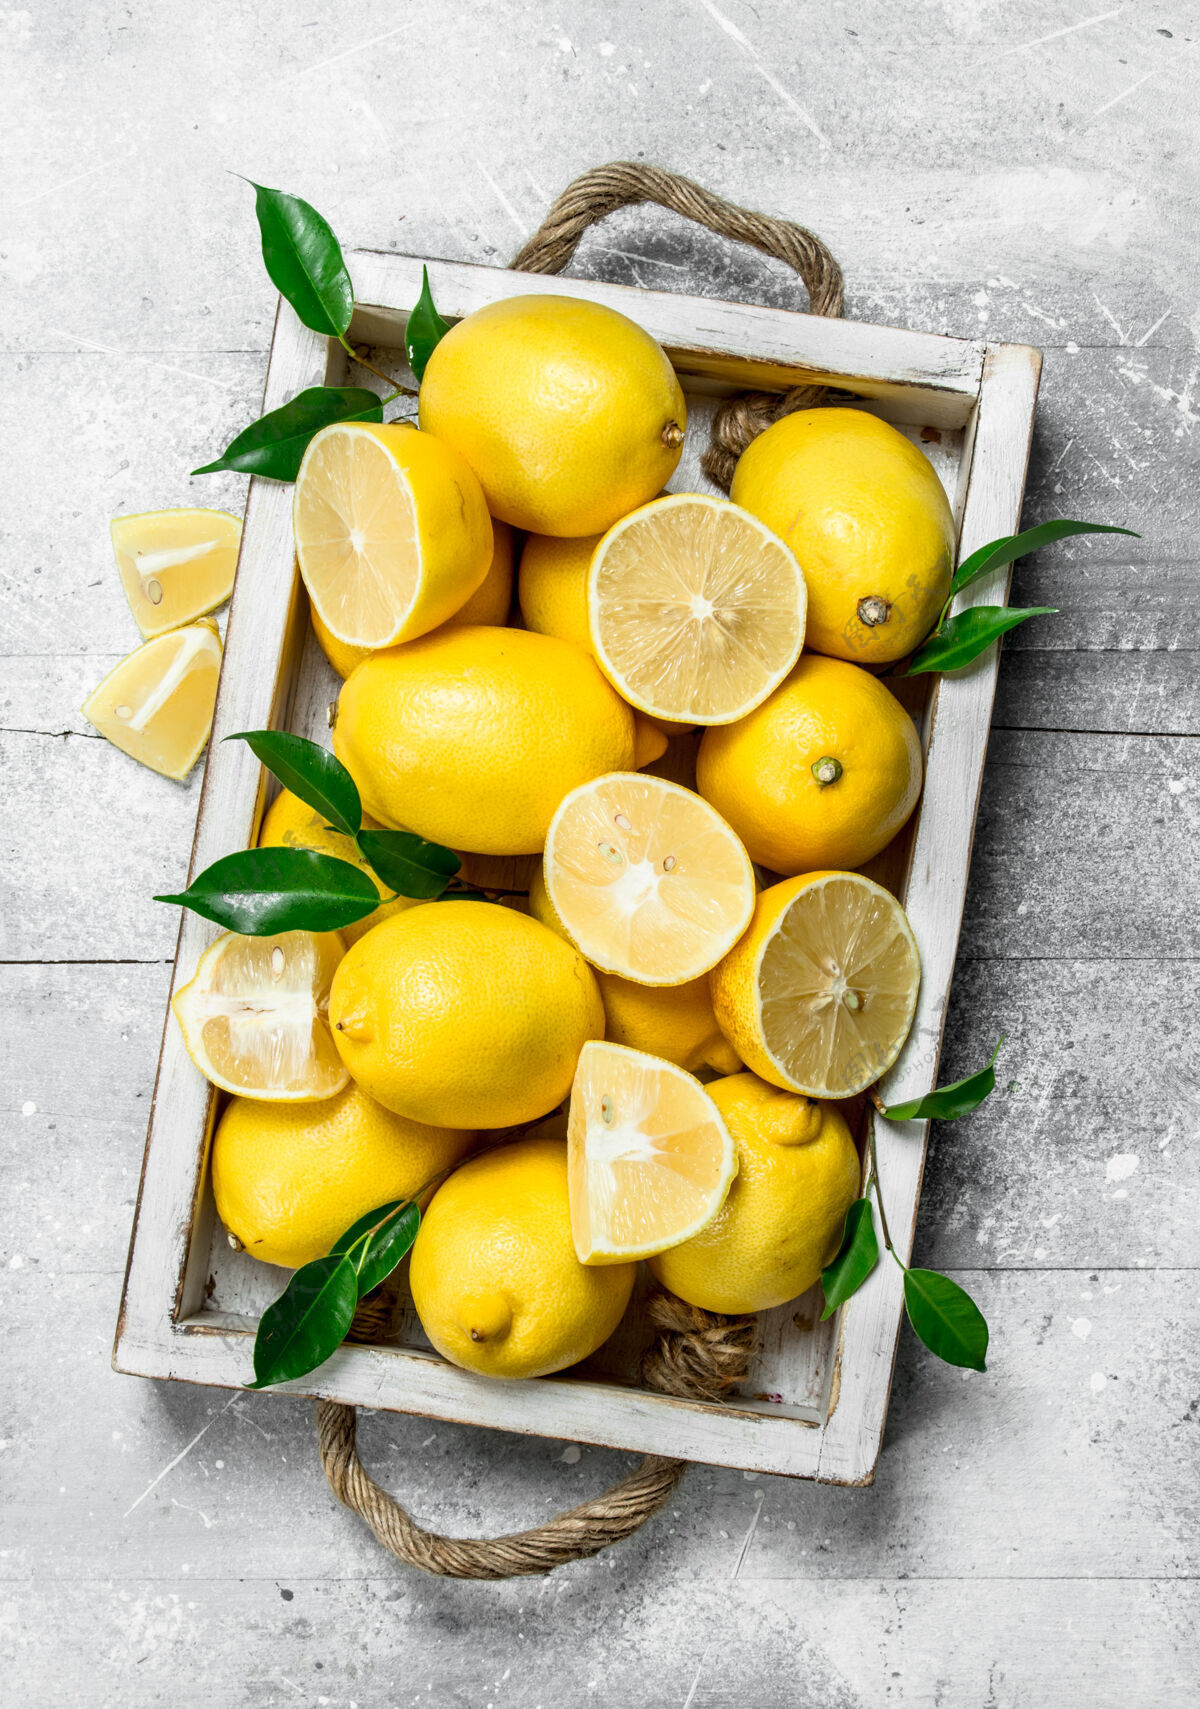 生的成熟多汁的柠檬 盘子里有叶子柠檬减肥果汁